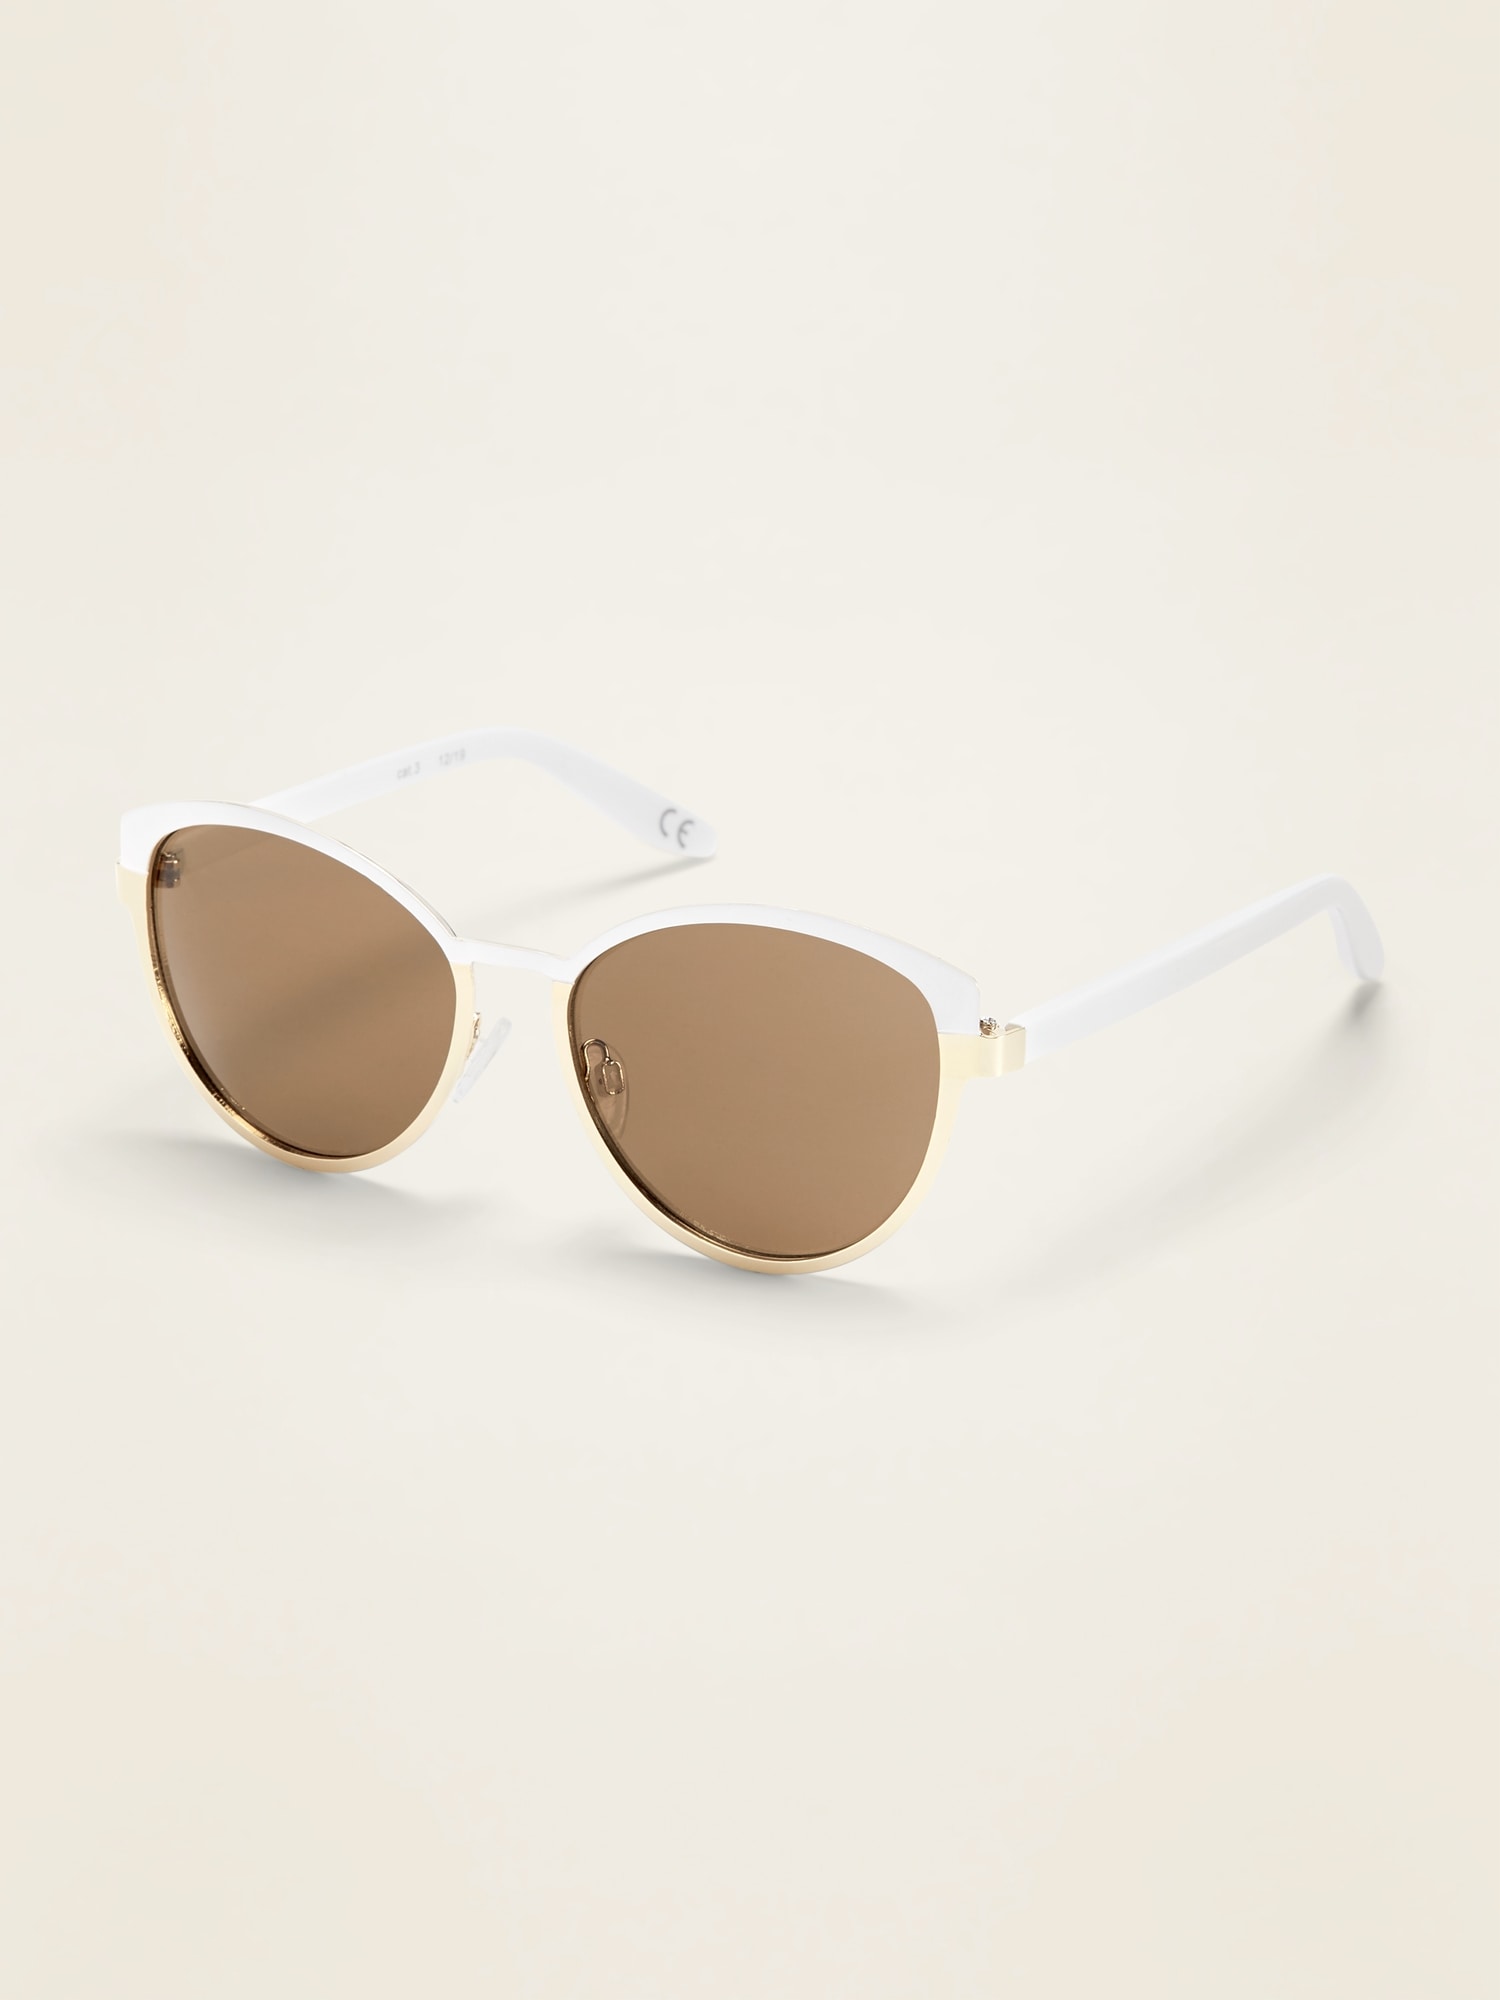 Ted Baker TWS164 Sunglasses | FramesDirect.com